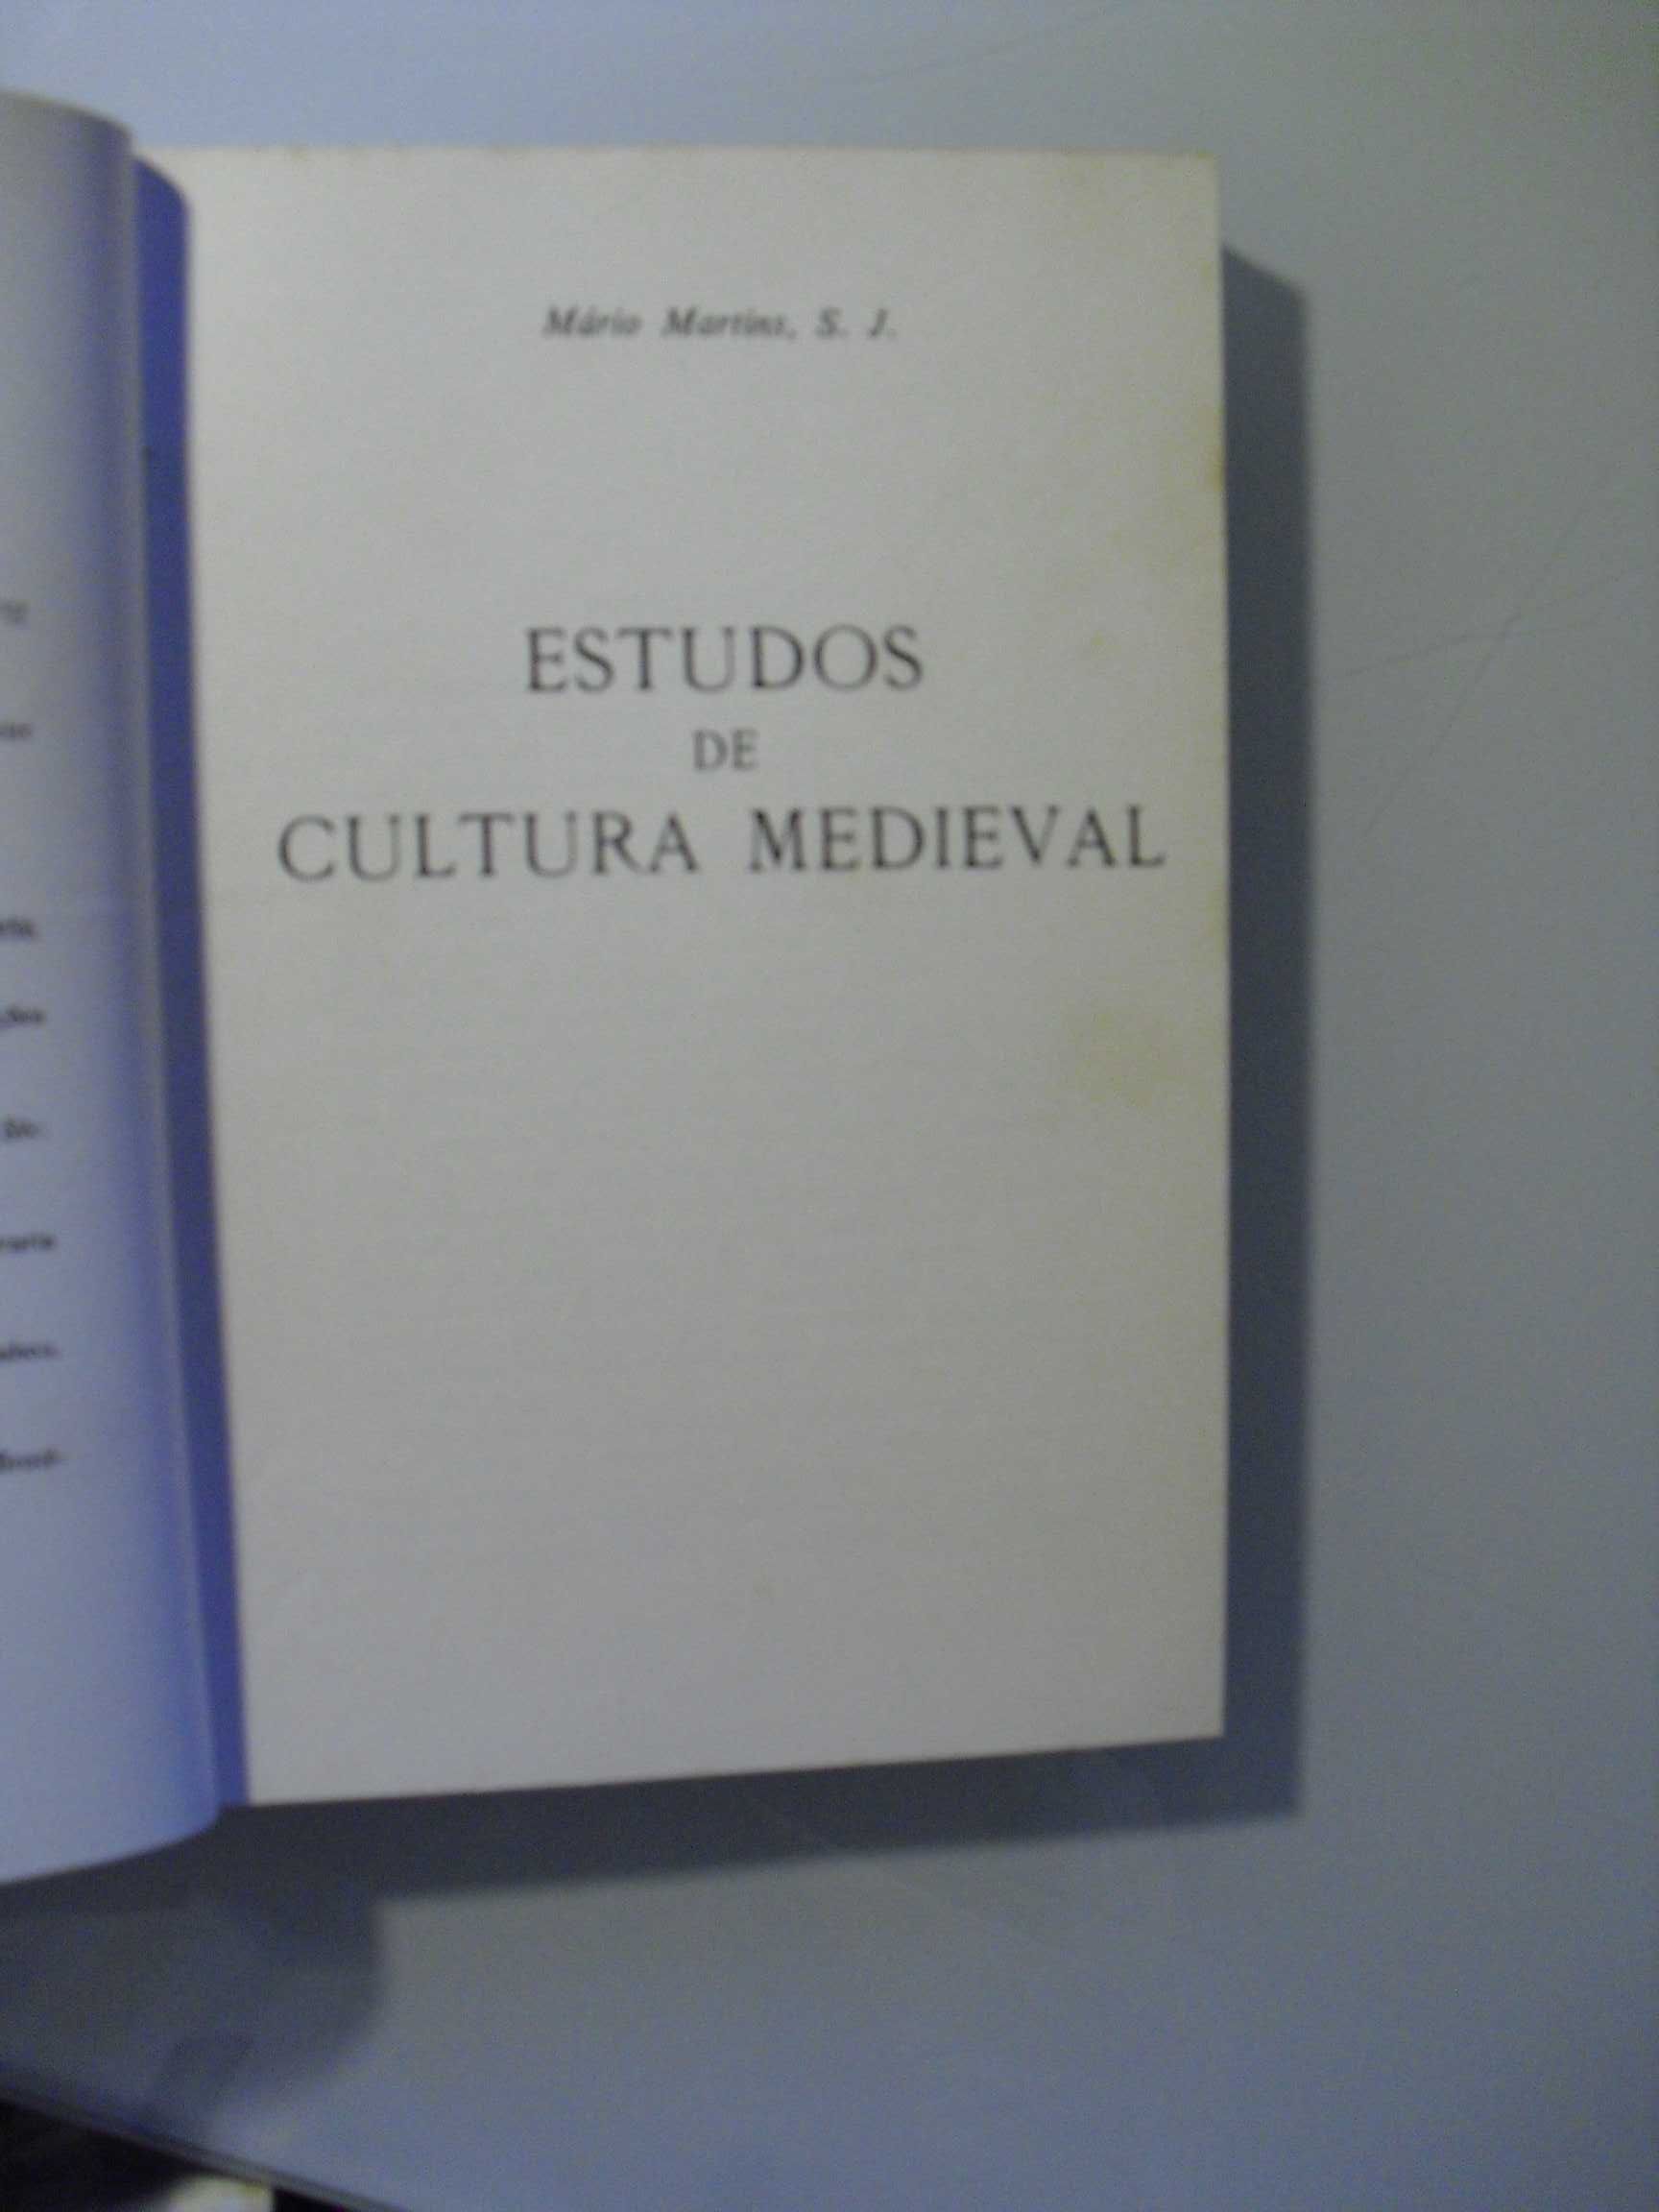 Martins (Mário,S.J);Estudos de Cultura Medieval-Volume II